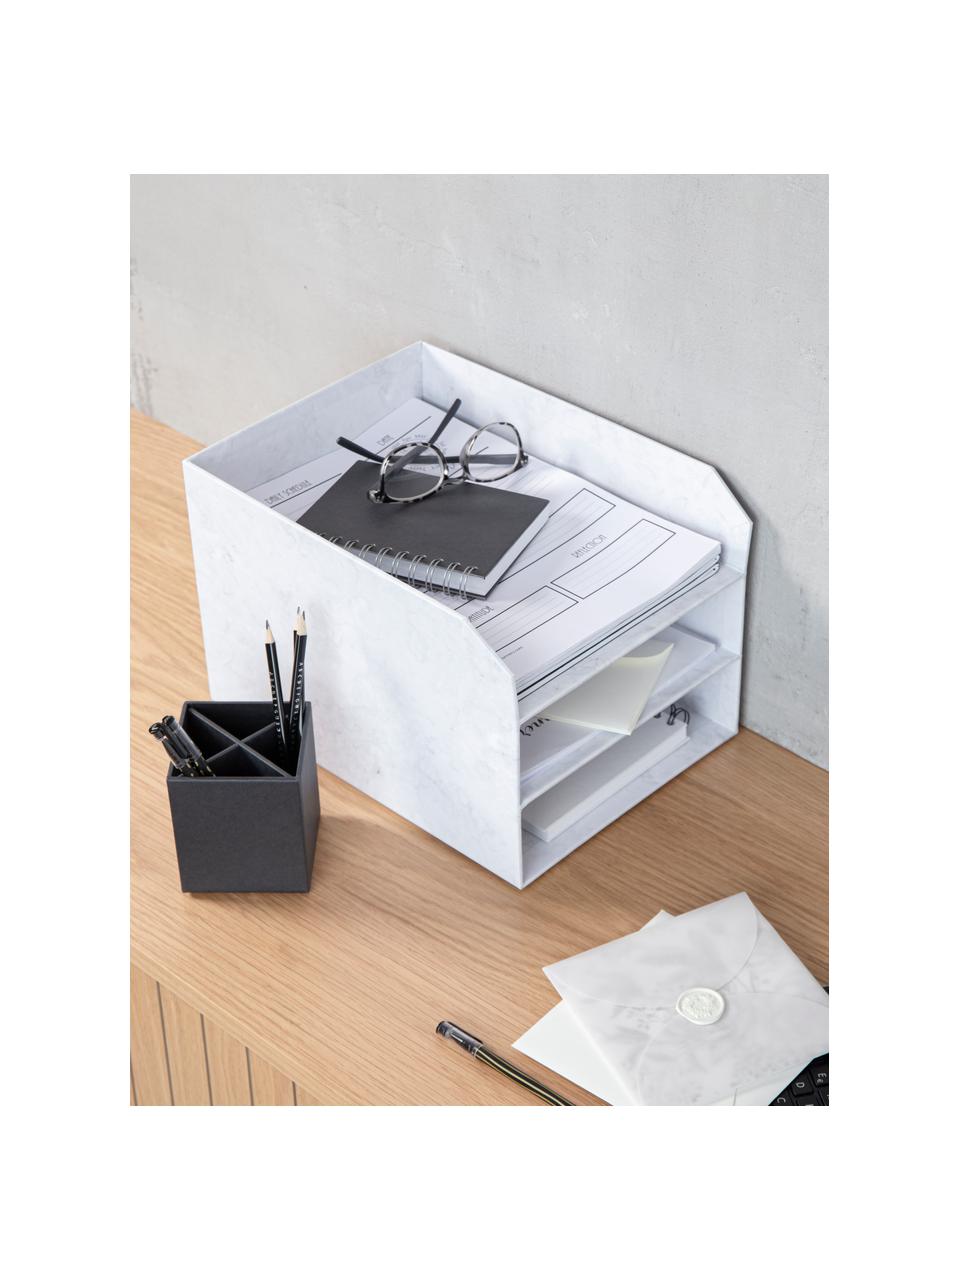 Dokumenten-Ablage Trey, Fester, laminierter Karton
(100 % recyceltes Papier), Weiß, marmoriert, B 23 x H 21 cm